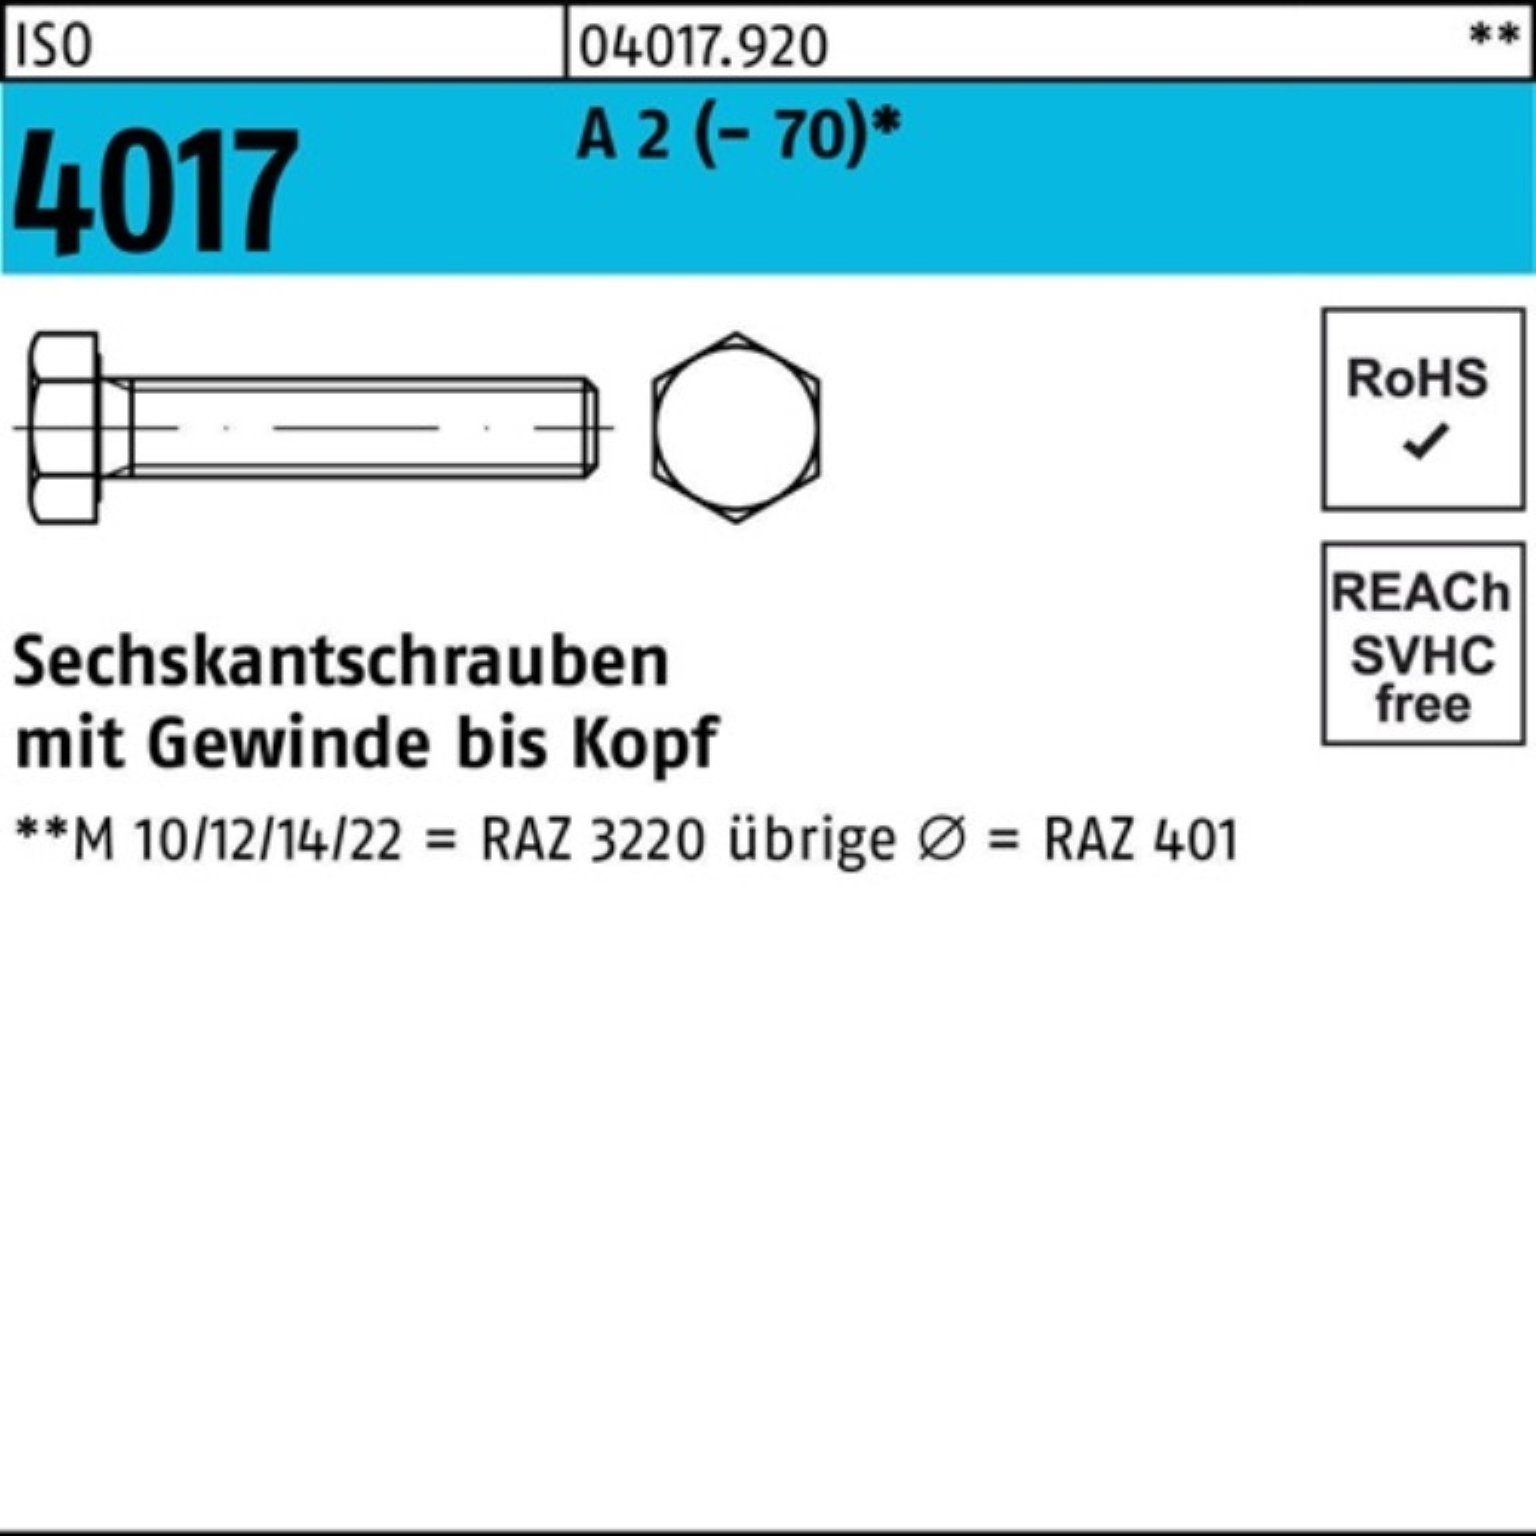 Bufab Sechskantschraube 100er Pack Sechskantschraube ISO 4017 VG M27x 110 A 2 (70) 1 Stück